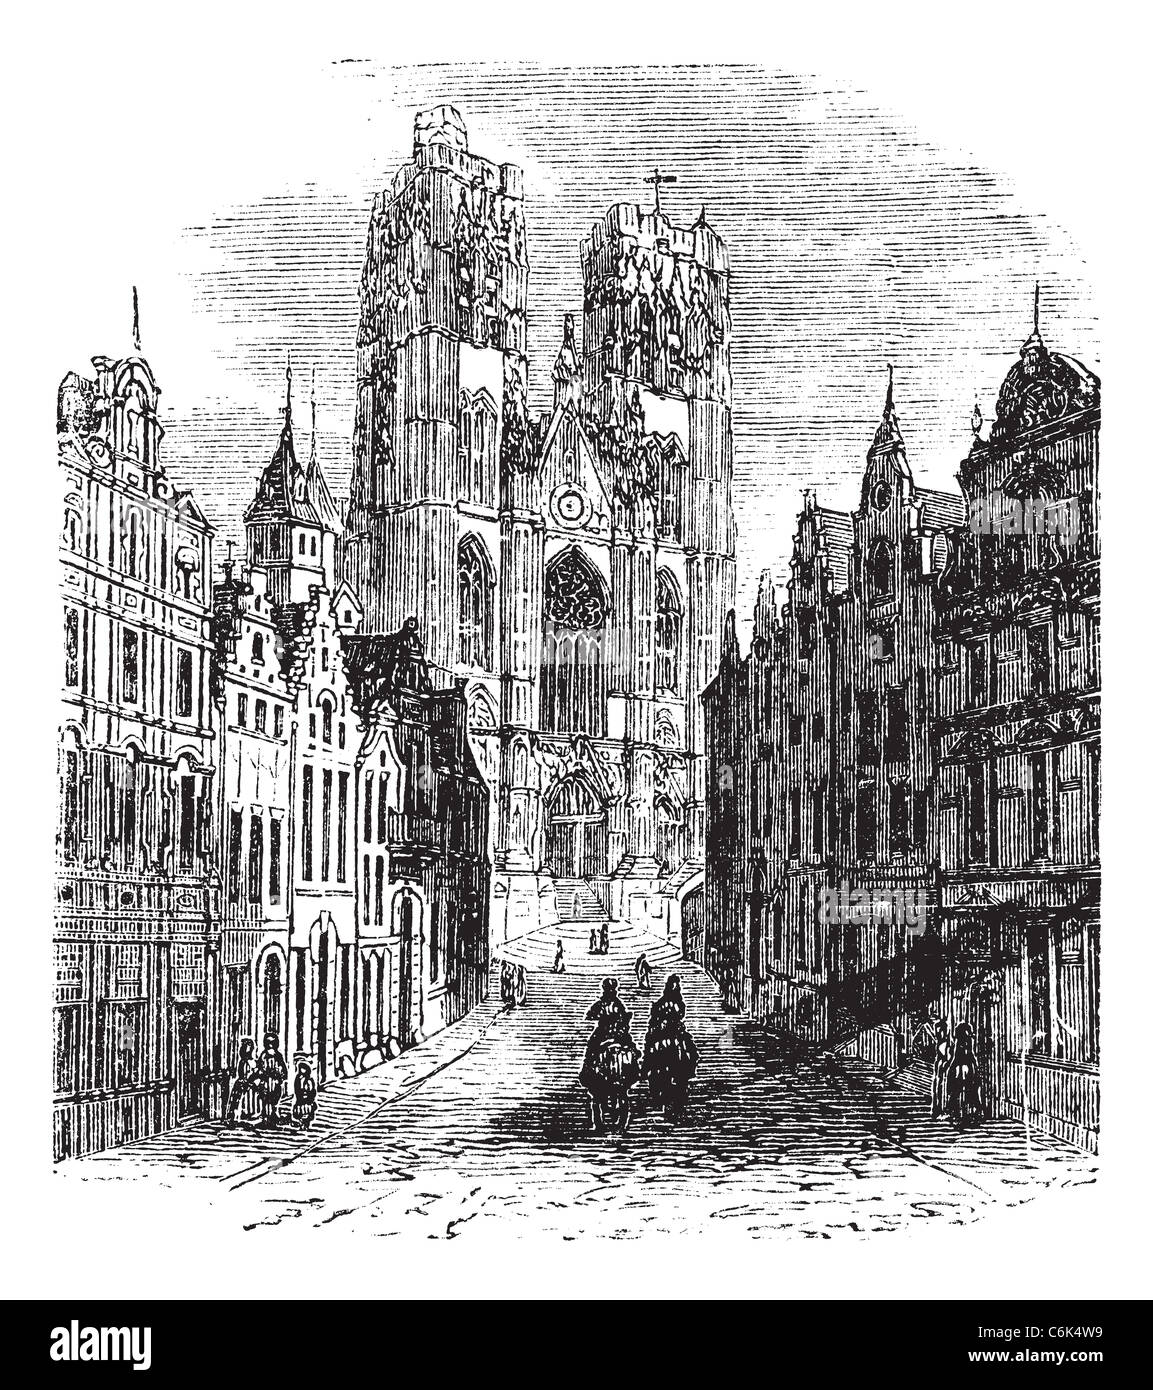 Saint-Gudula l'Église, en Belgique. Gravure d'époque. Gravée ancienne illustration d'une église catholique à la Treurenberg hill. Banque D'Images